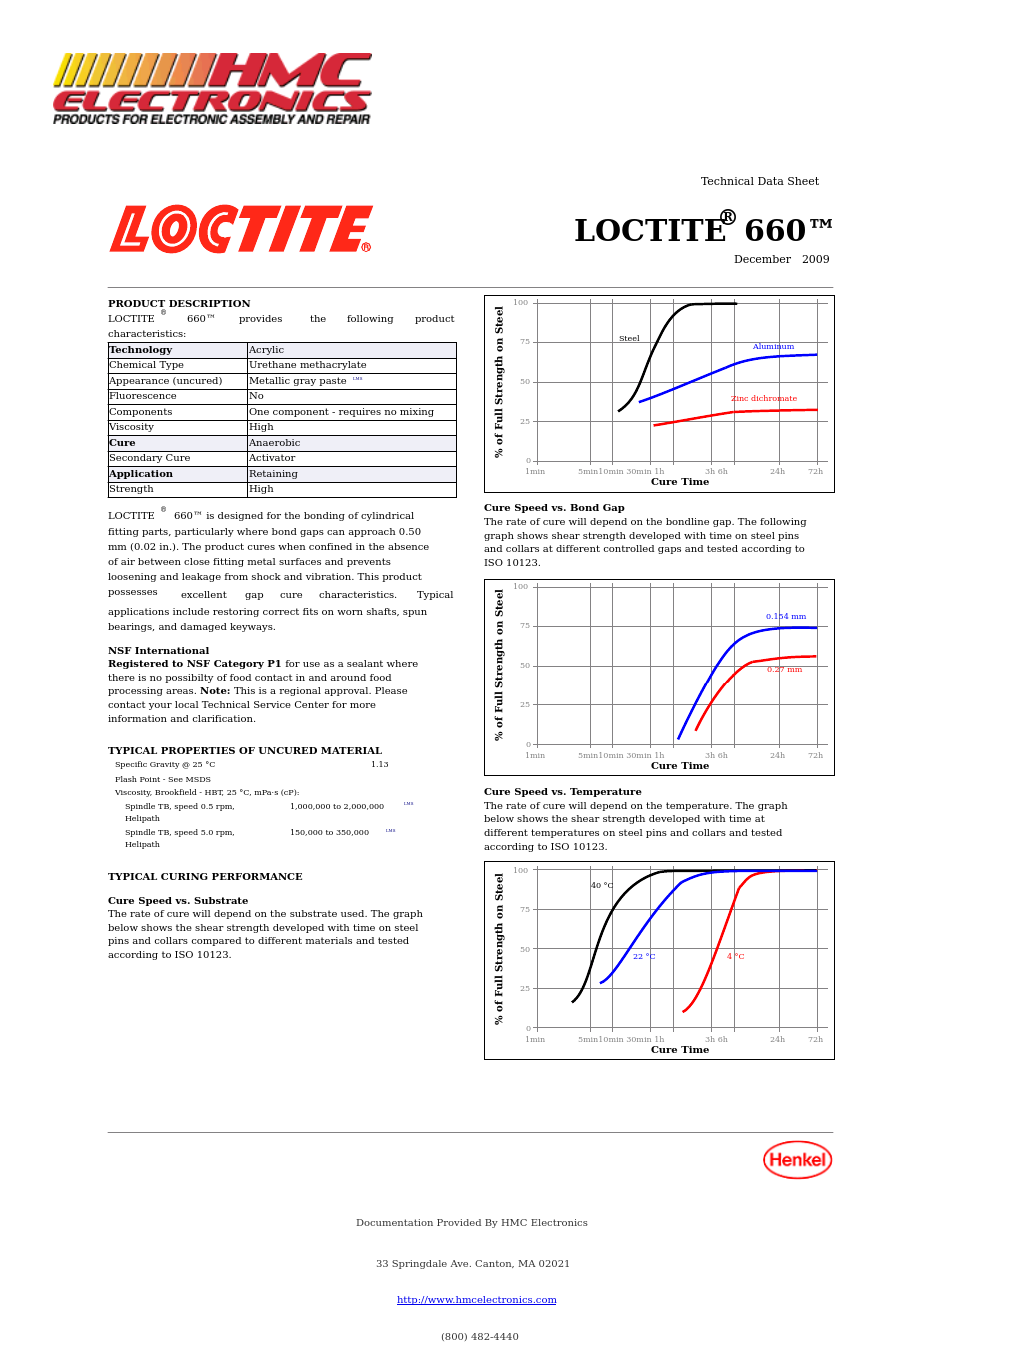 66040-LOC Loctite 660 Retaining Compound, Quick Metal